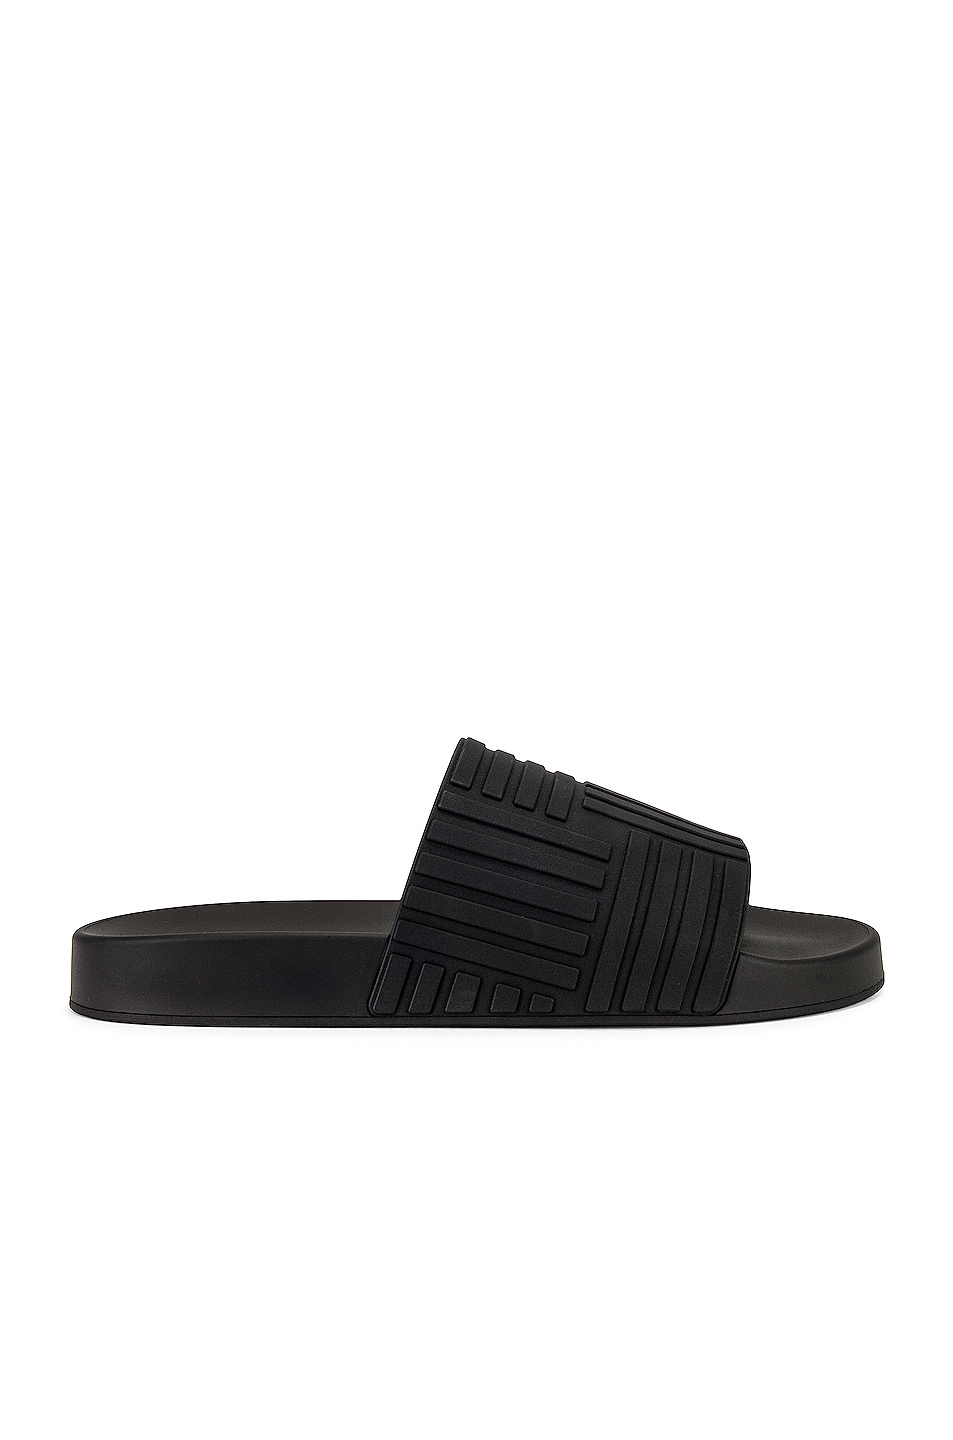 The Slider Sandal in Black